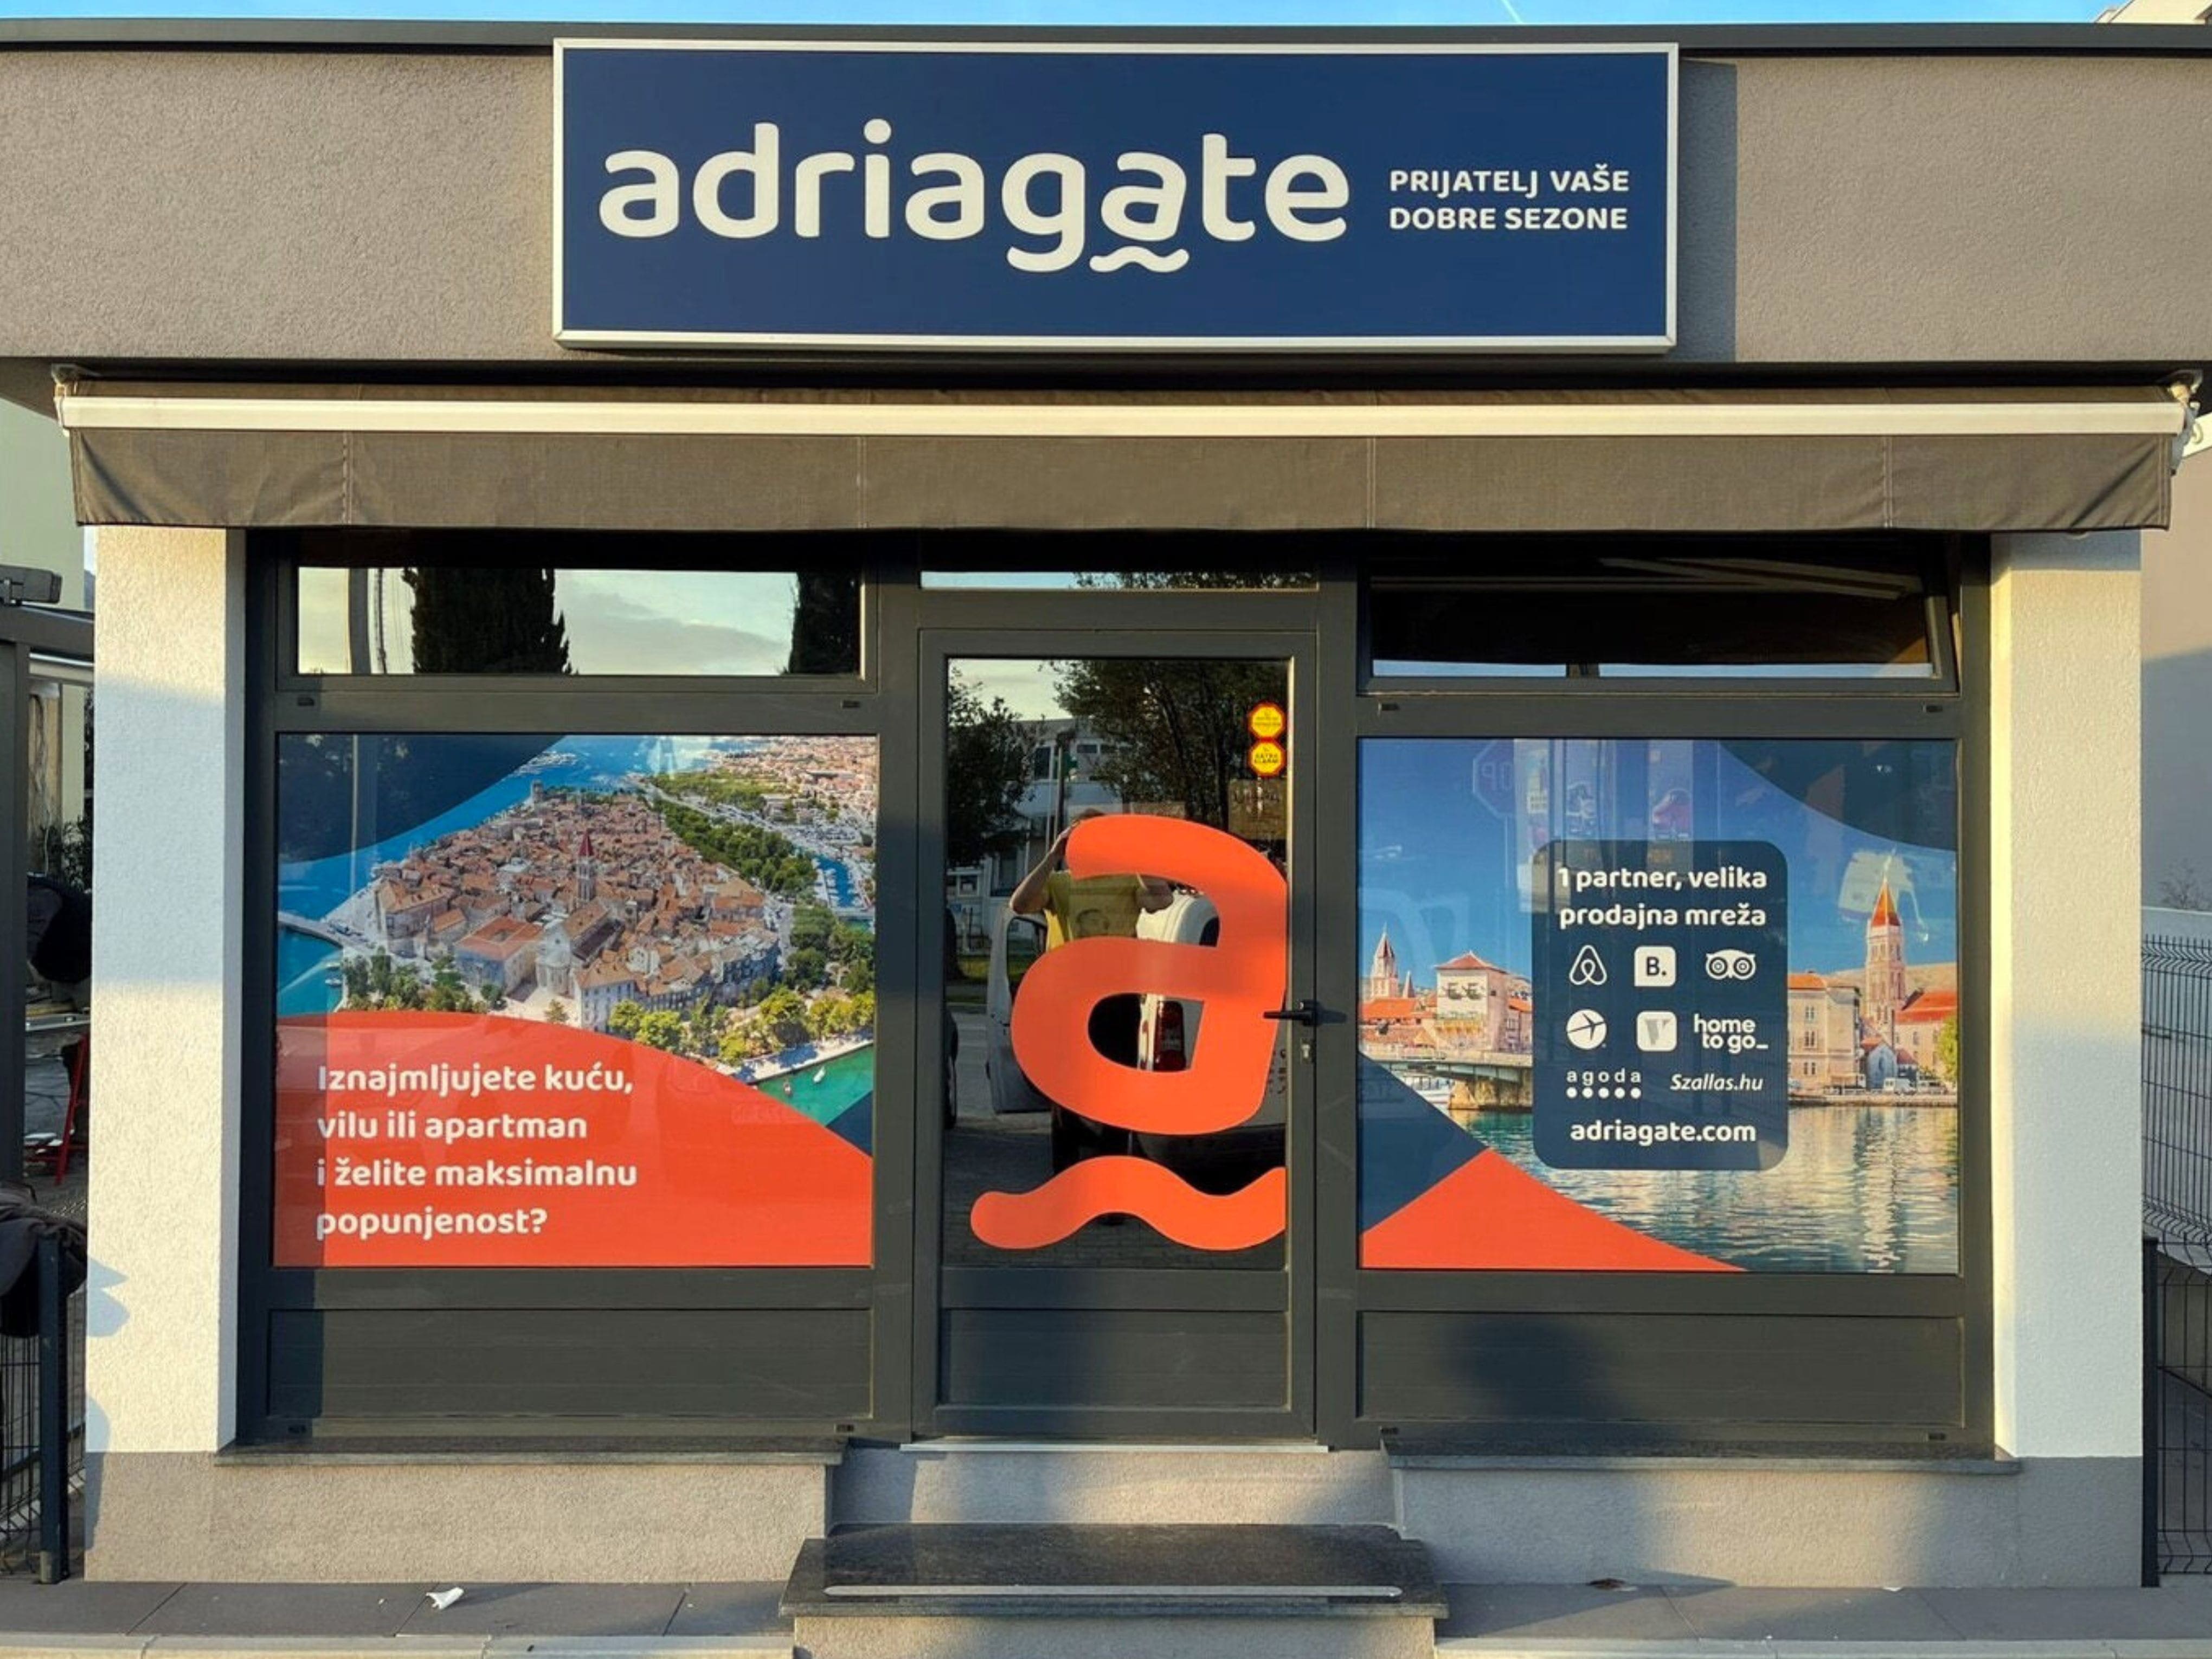 Biuro podróży Adriagate - Oddział w Trogirze